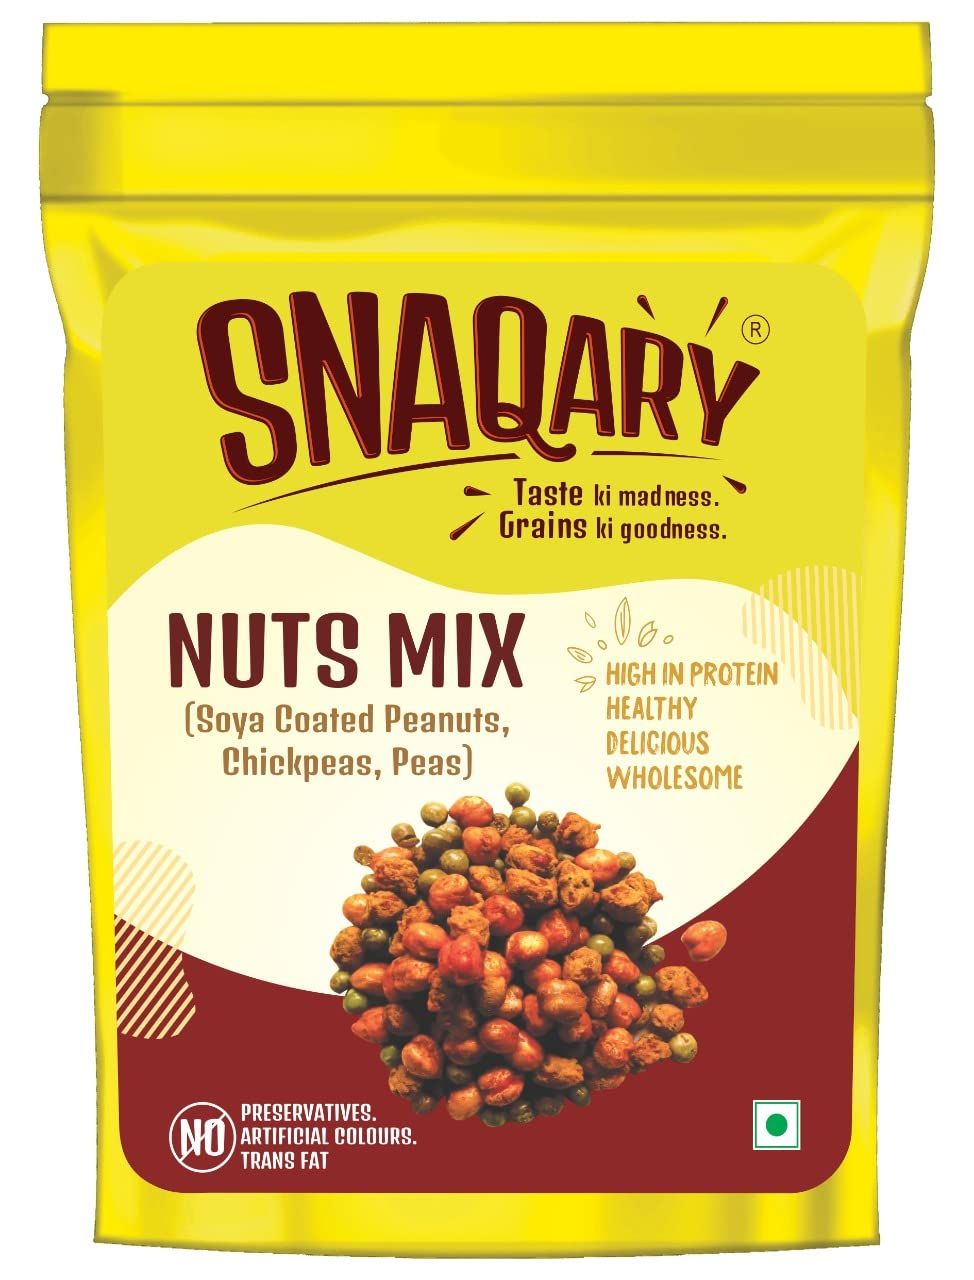 Snaqary Nuts Mix Image